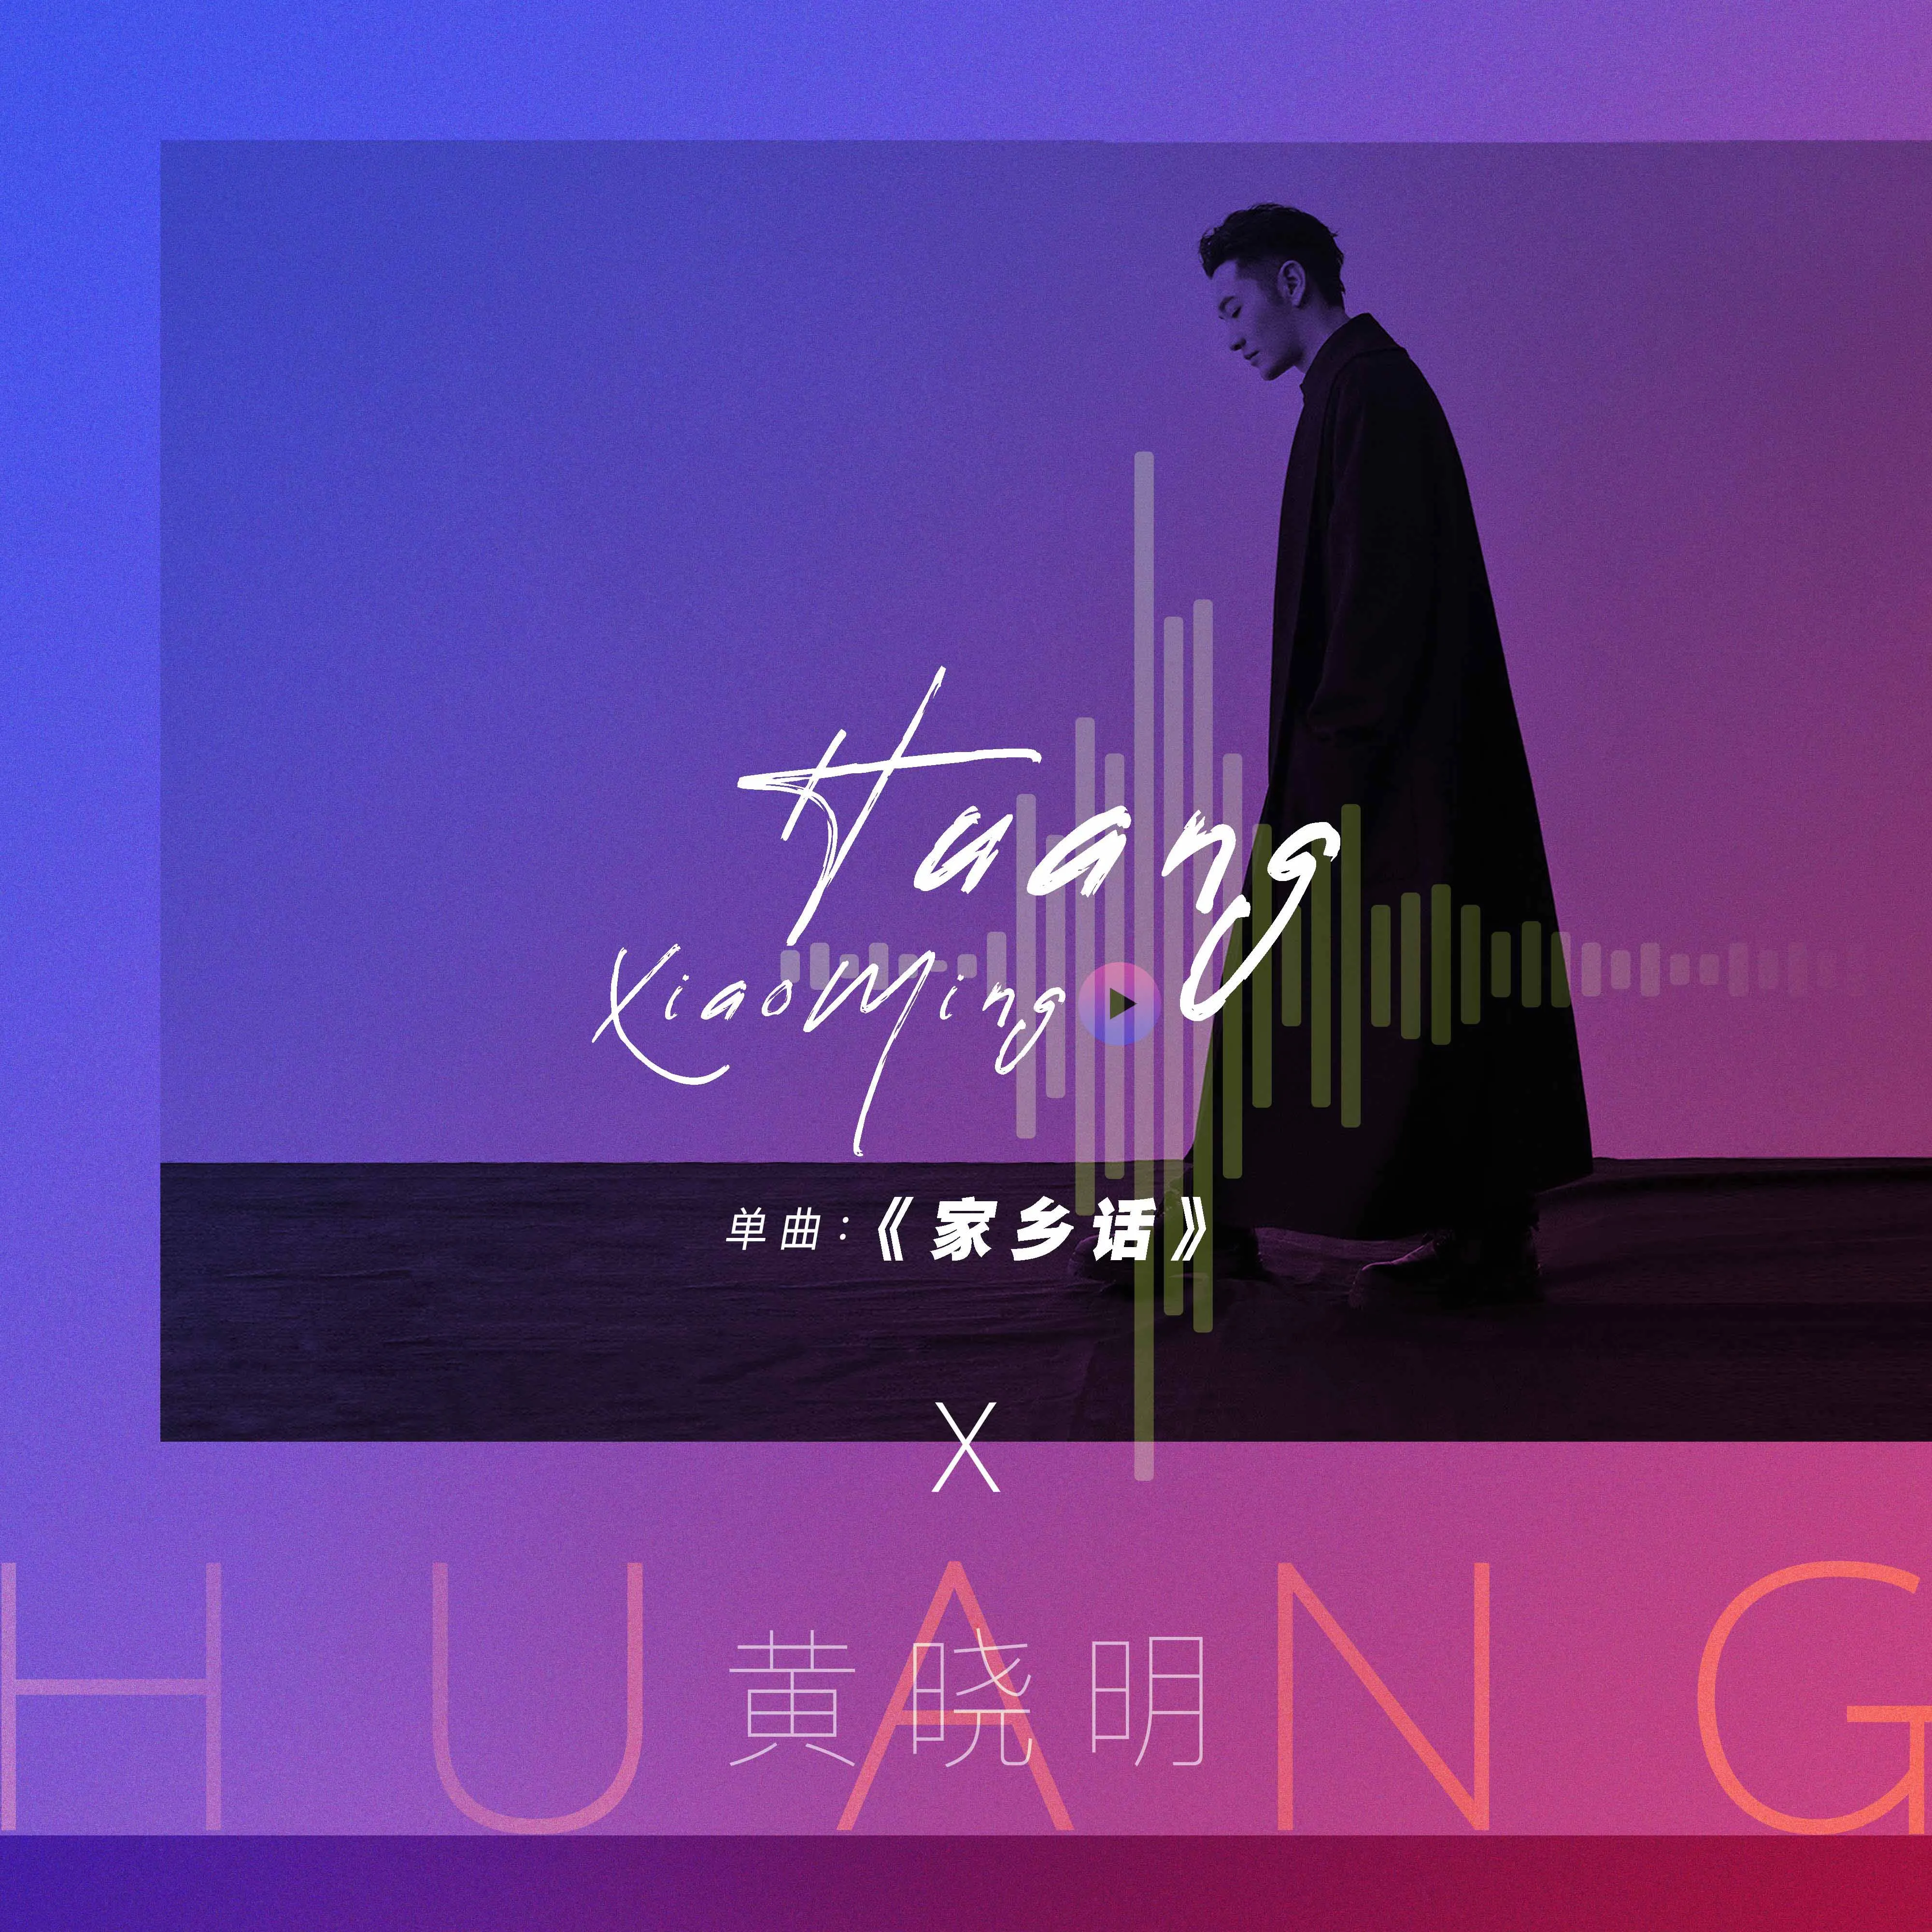  Xiaoming Huang 最新单曲《家乡话》于11月11日正式上线.jpg